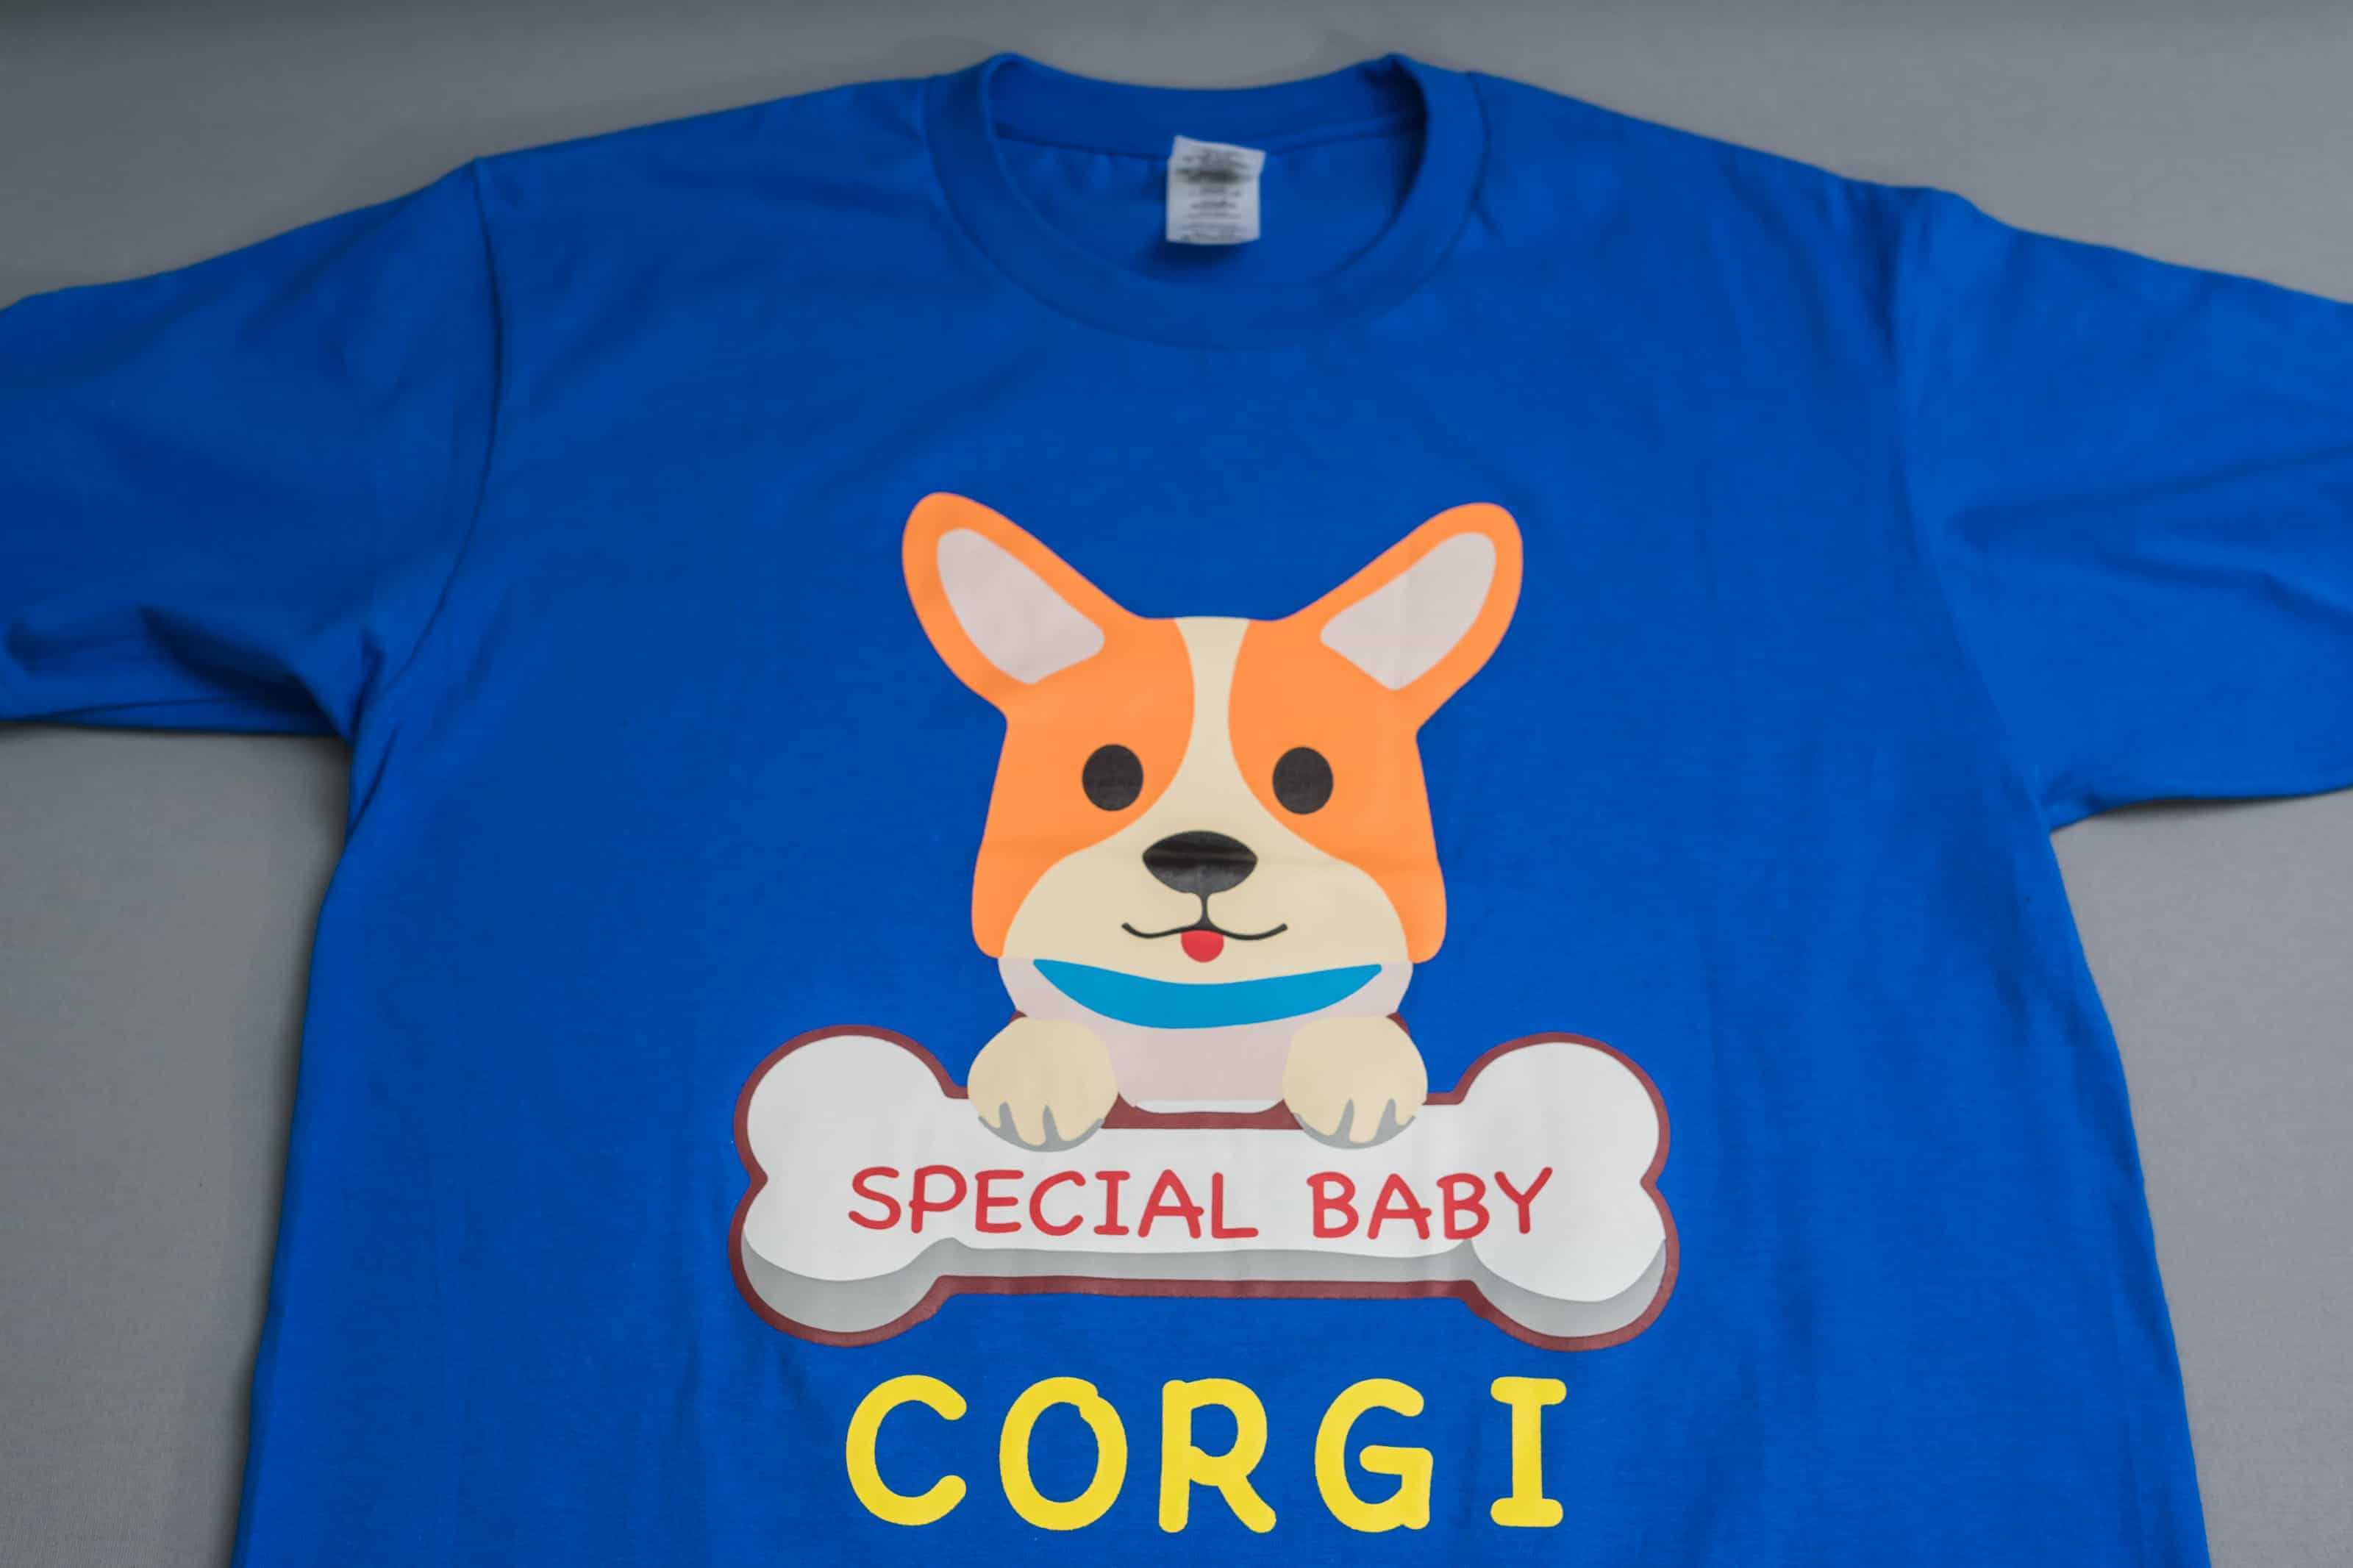 客製化T恤-CORGI 客製狗狗圖案T恤的第1張圖(客製化公司制服、班服製作、團體服製作等示意或作品圖)